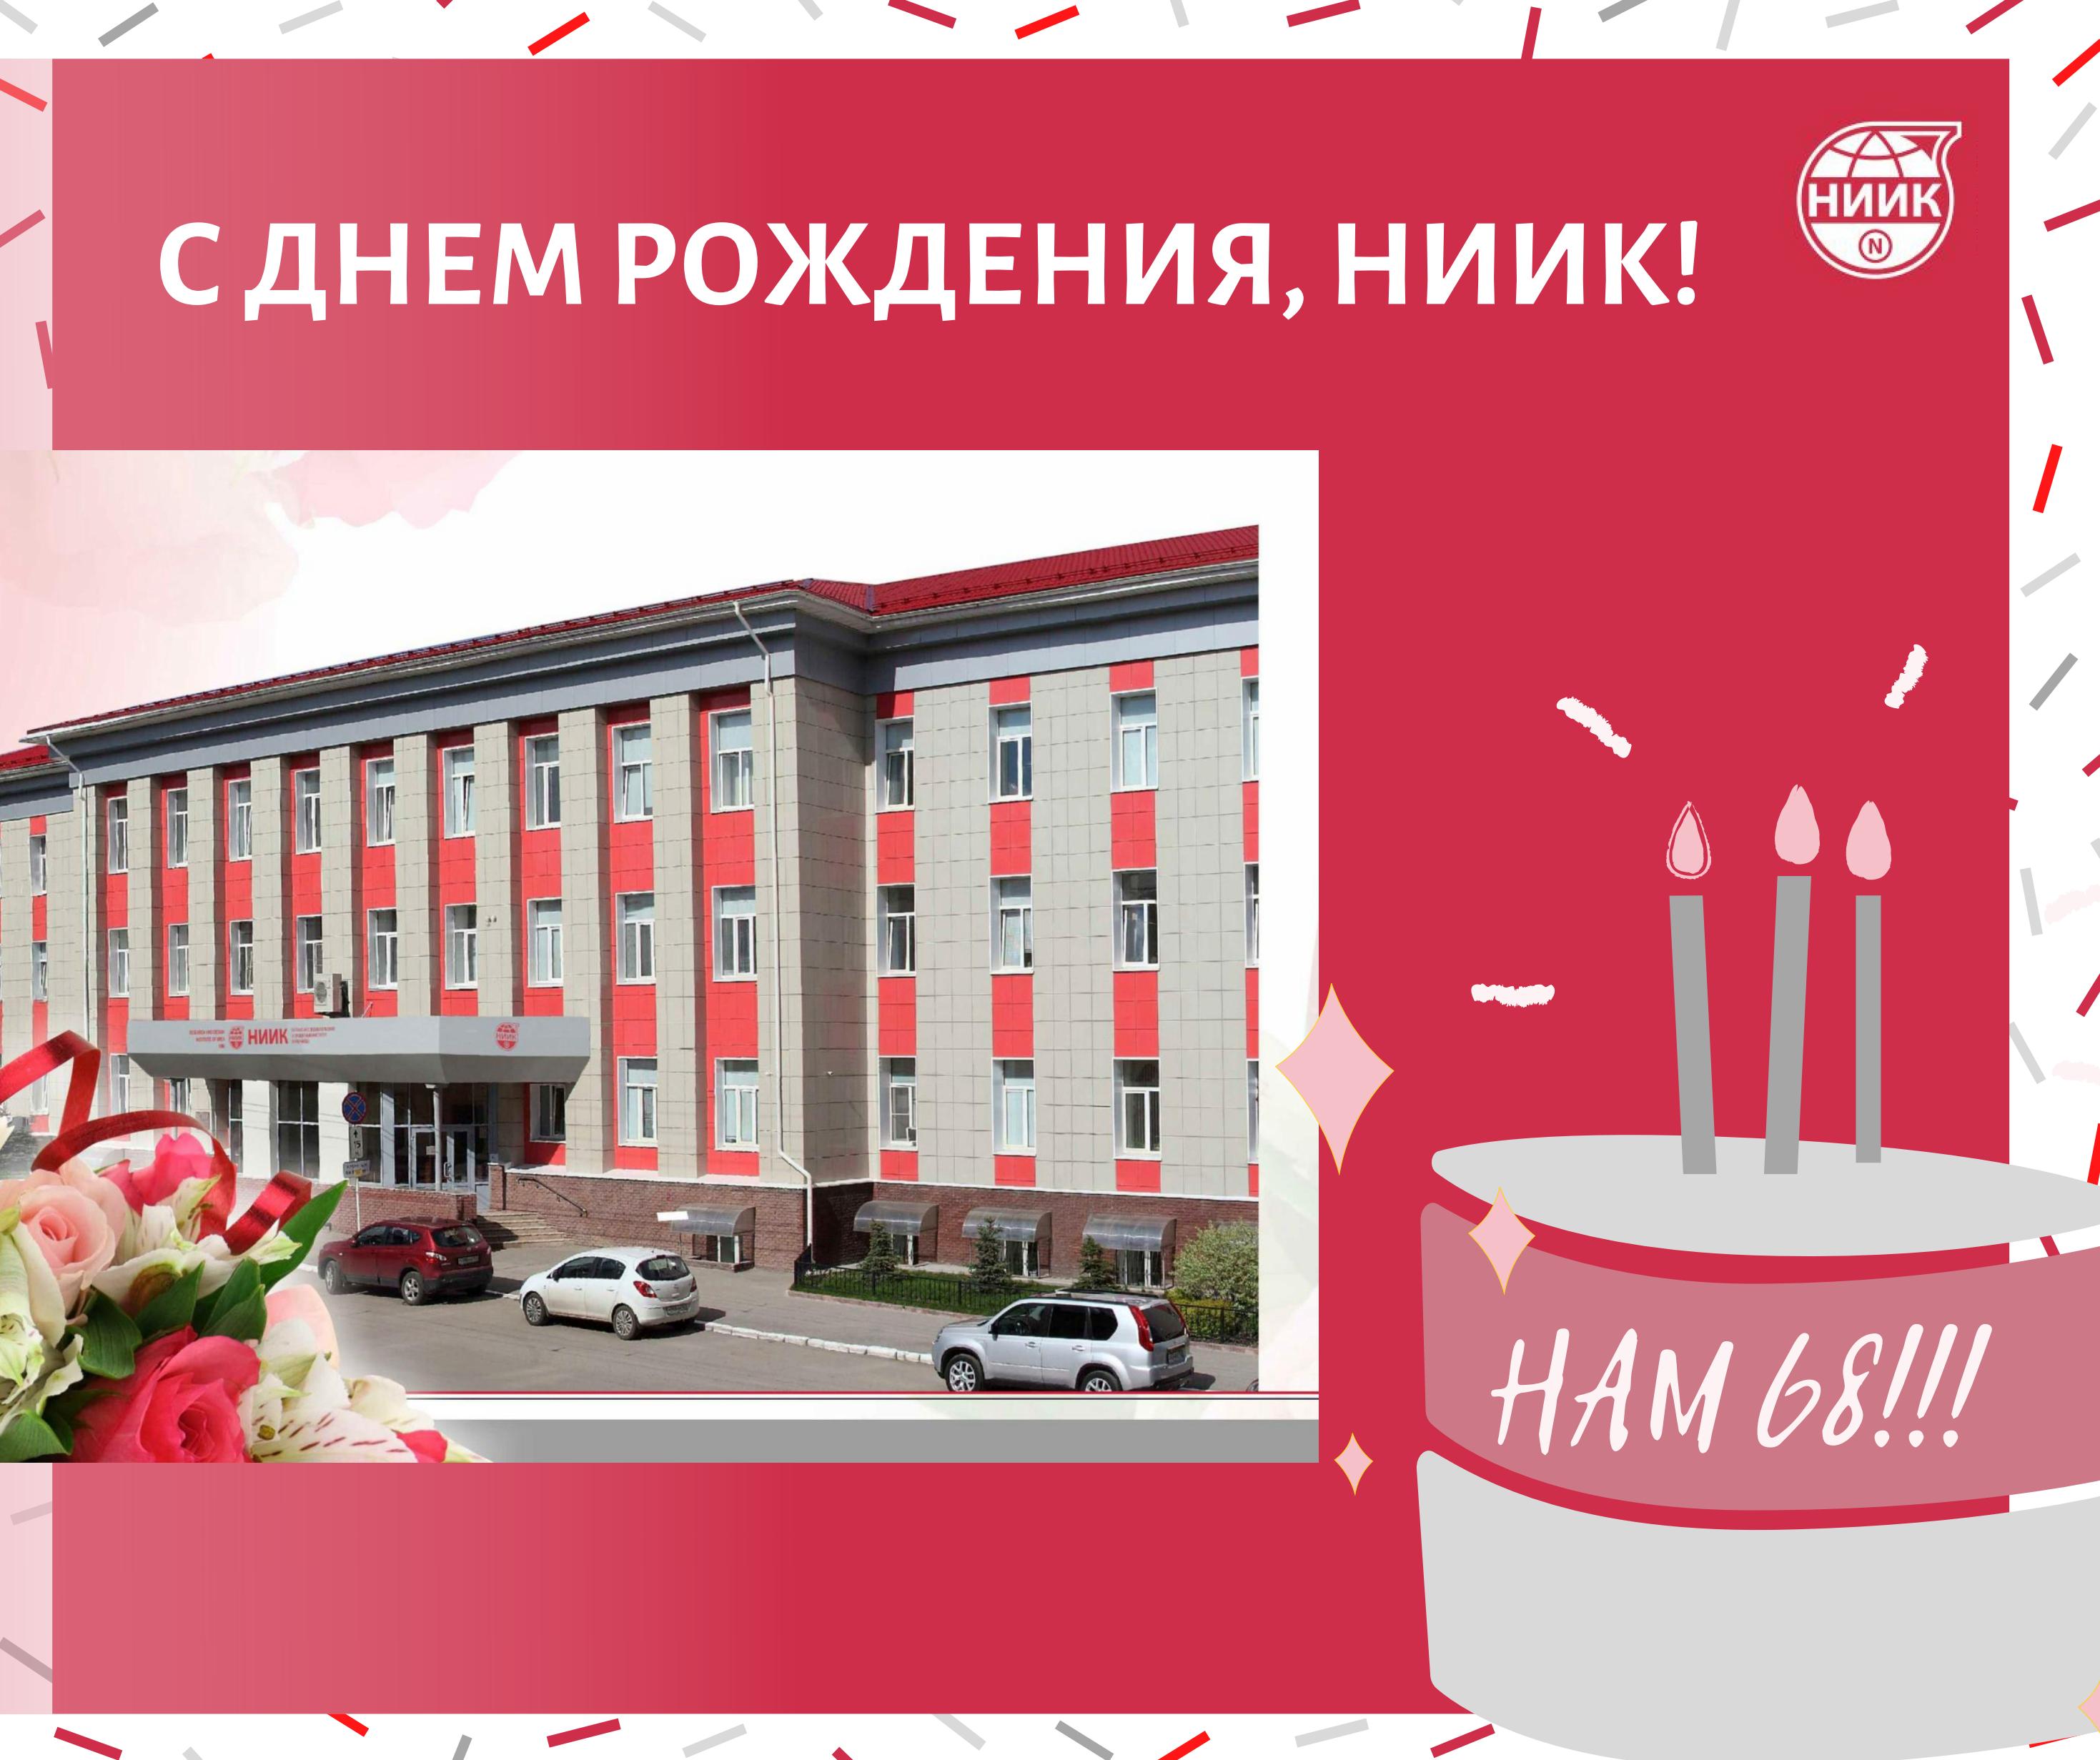 31 октября 2020 года ОАО «НИИК» исполняется 68 лет 